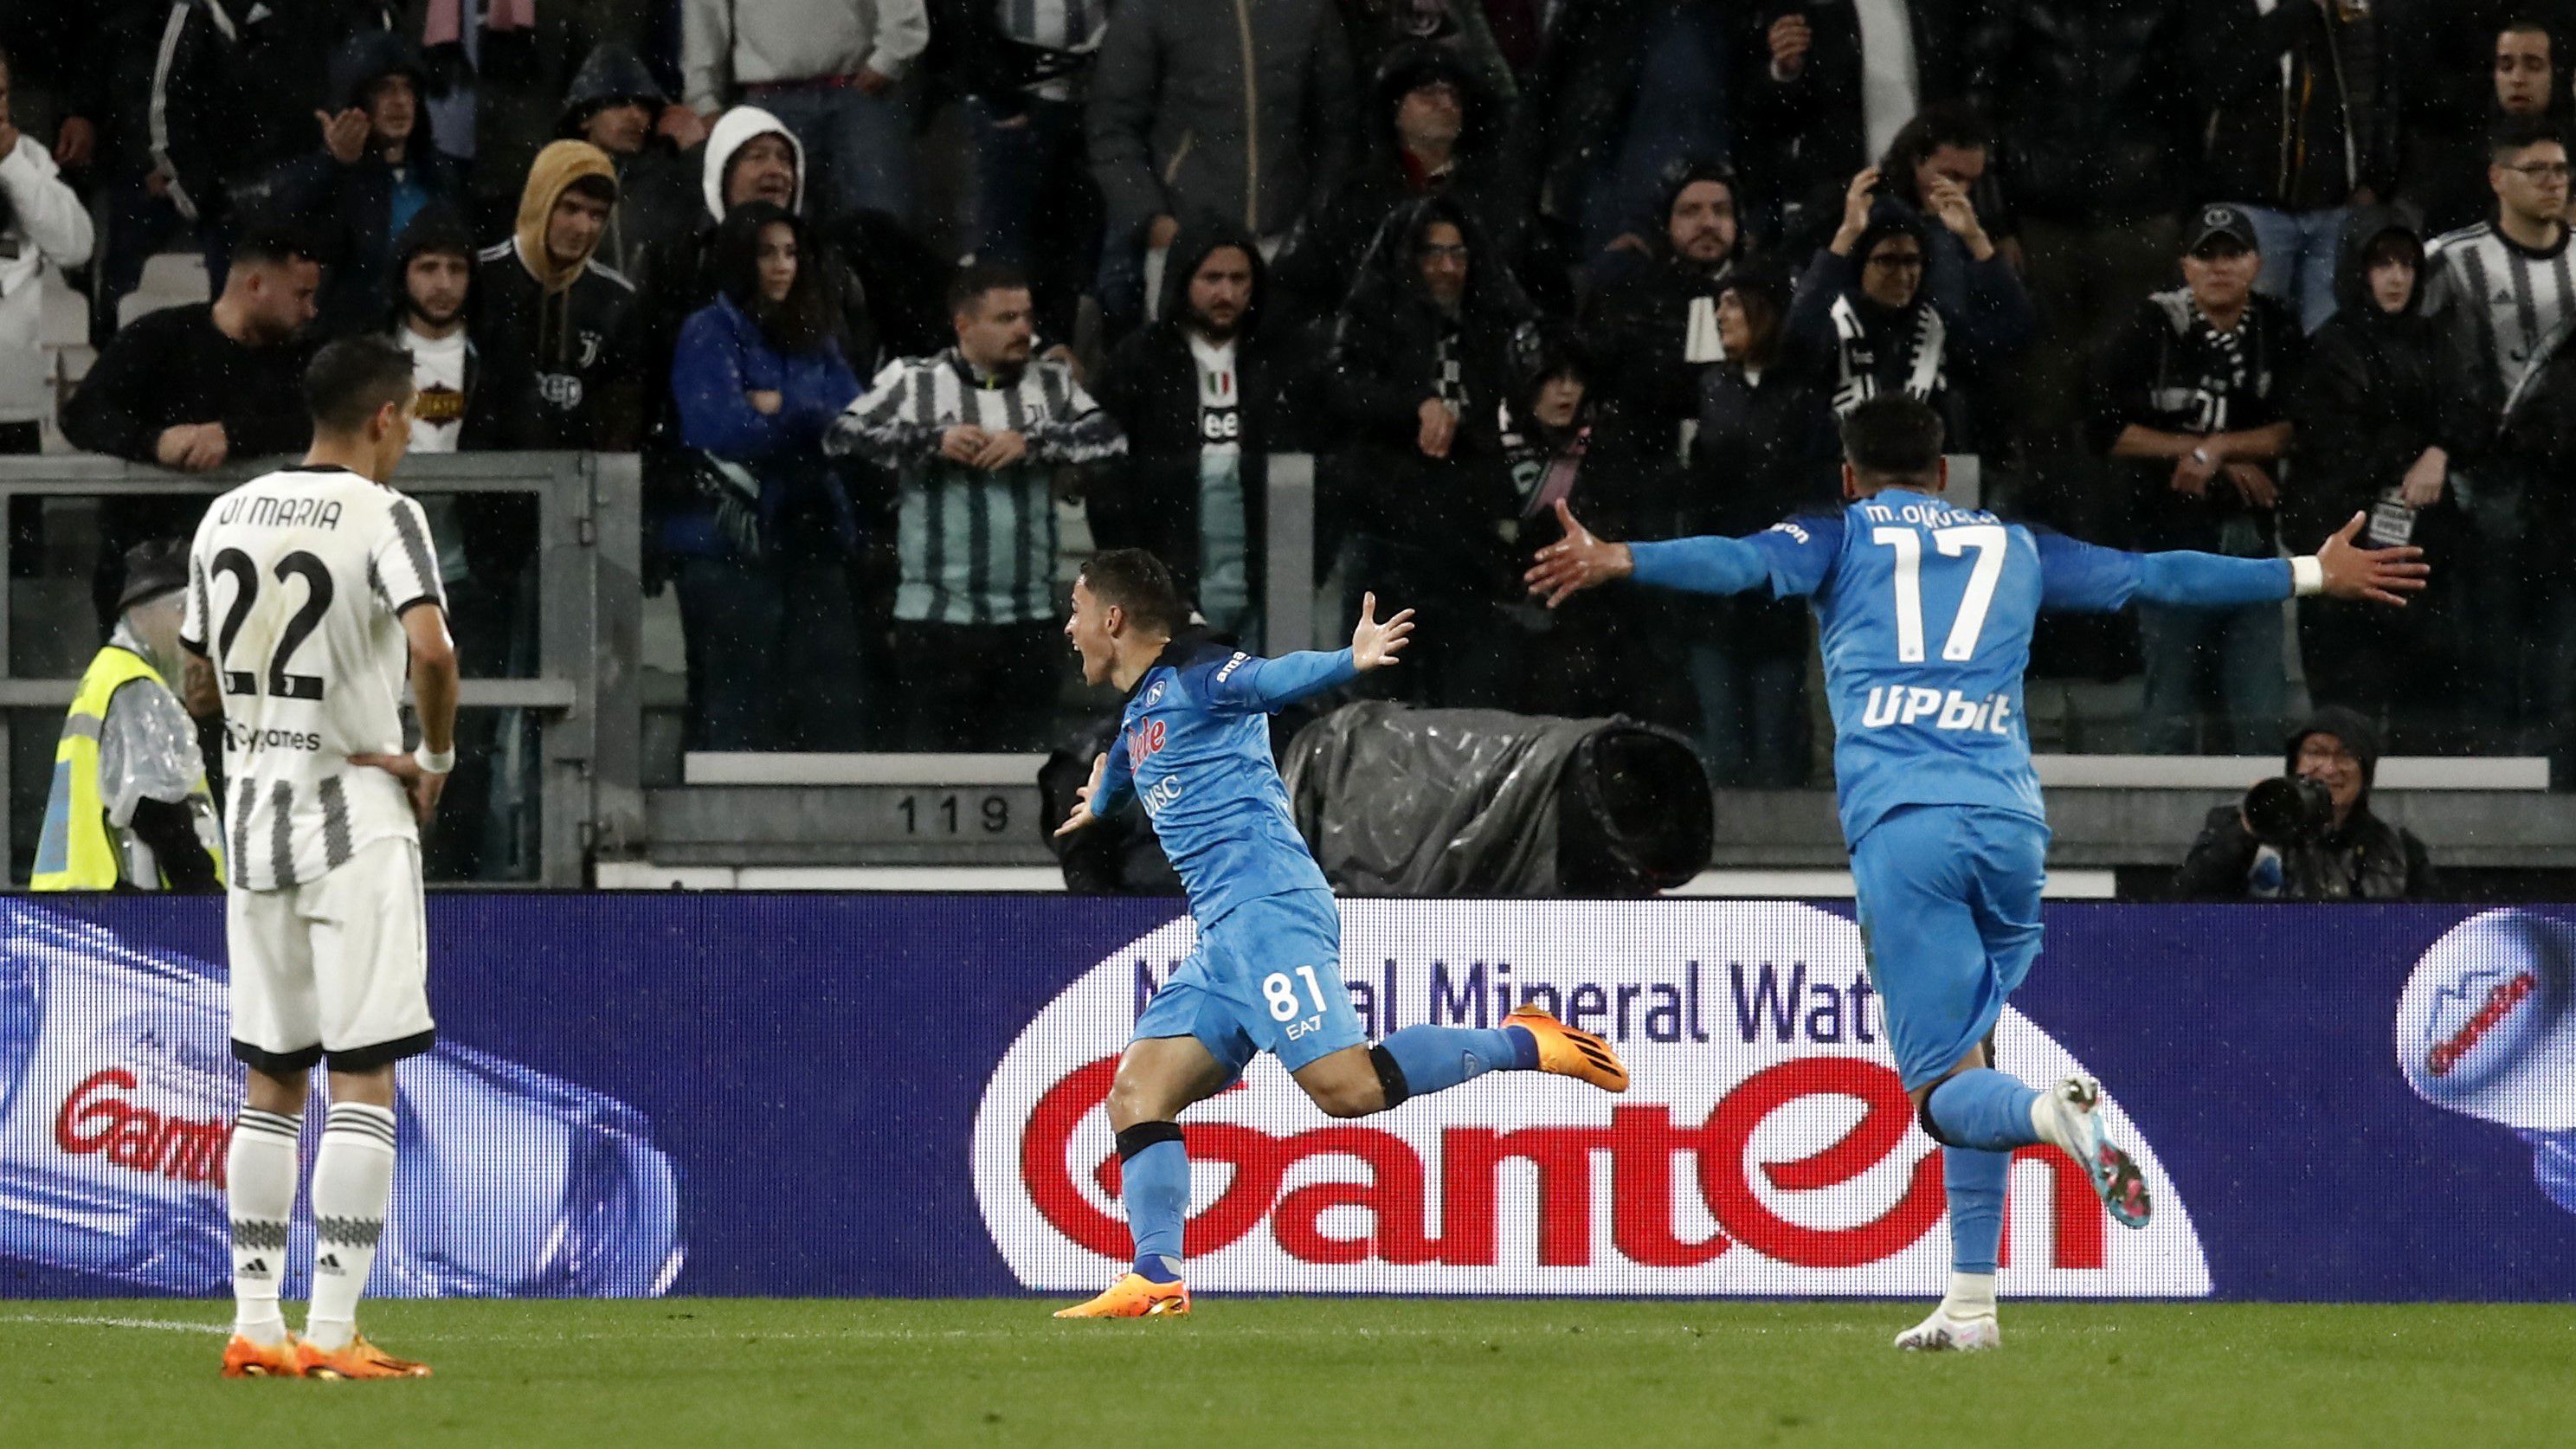 Áprilisban Giacomo Raspadori hosszabbításban szerzett góljával a Napoli idegenben győzött a Juventus ellen. (Fotó: Getty Images)